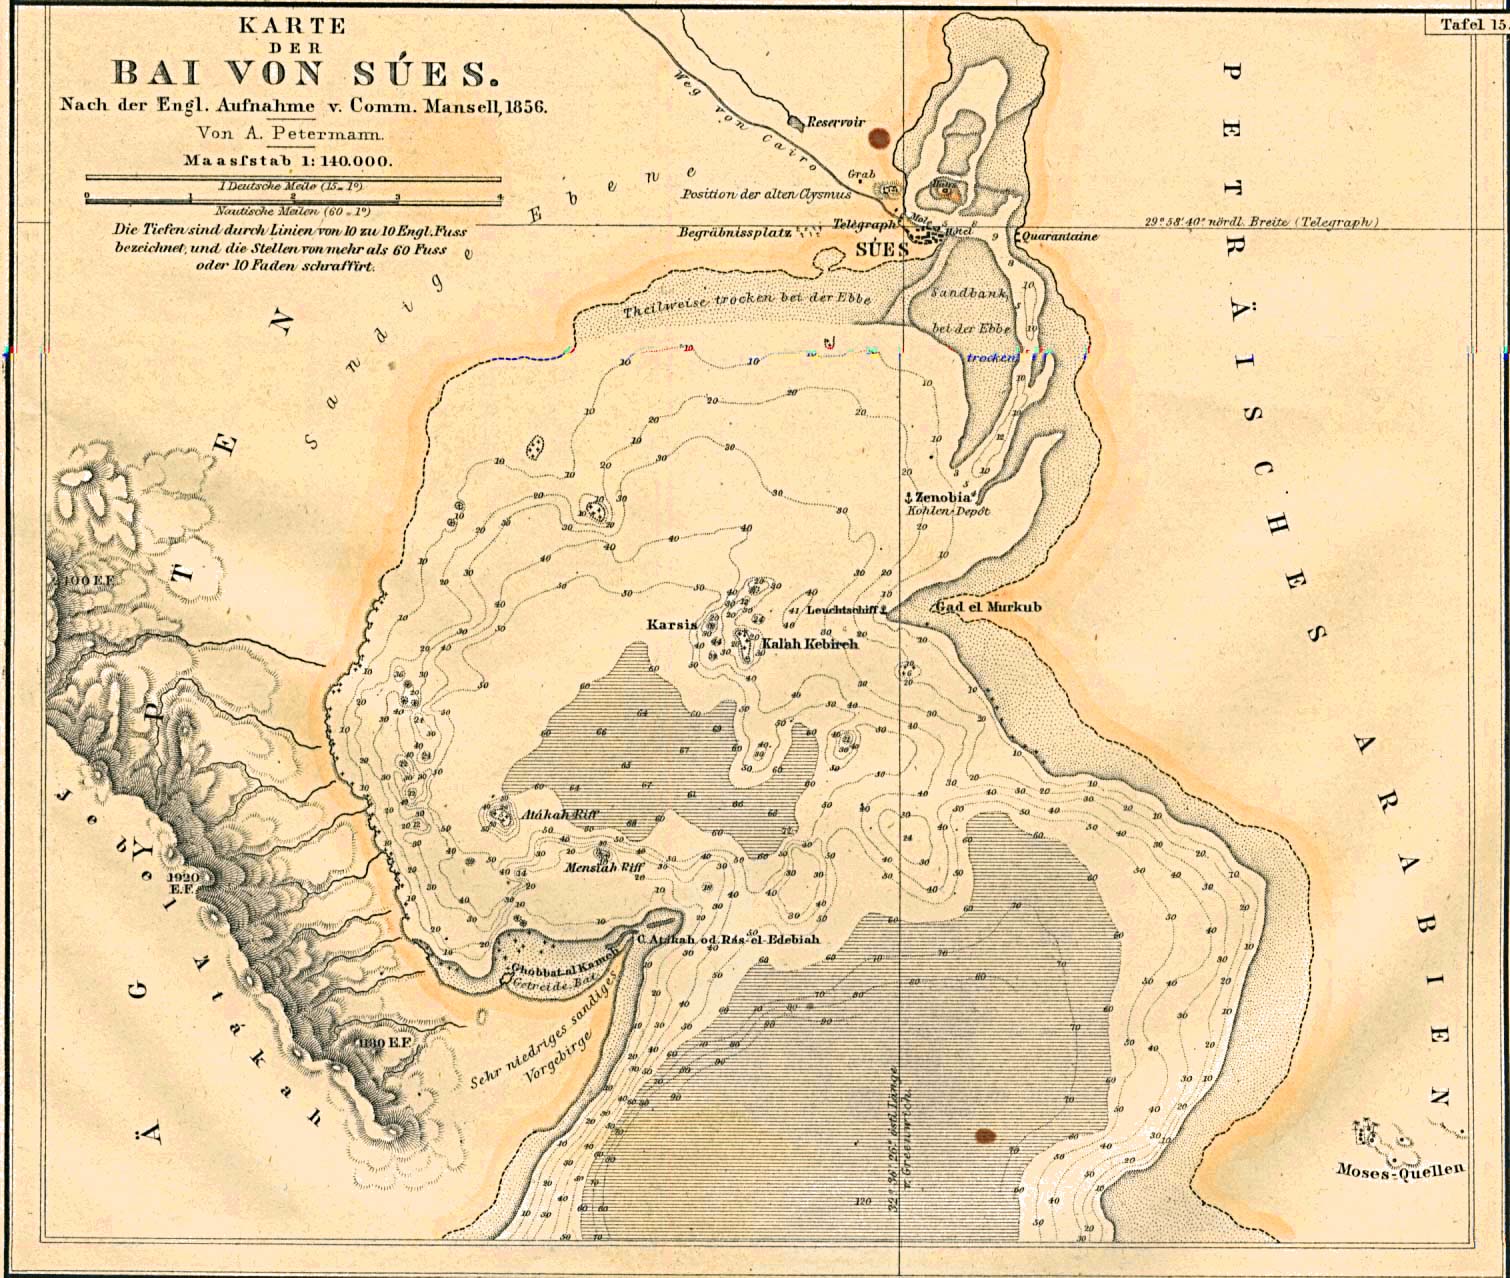 Mapa de la Bahía de Suez, Egipto 1856